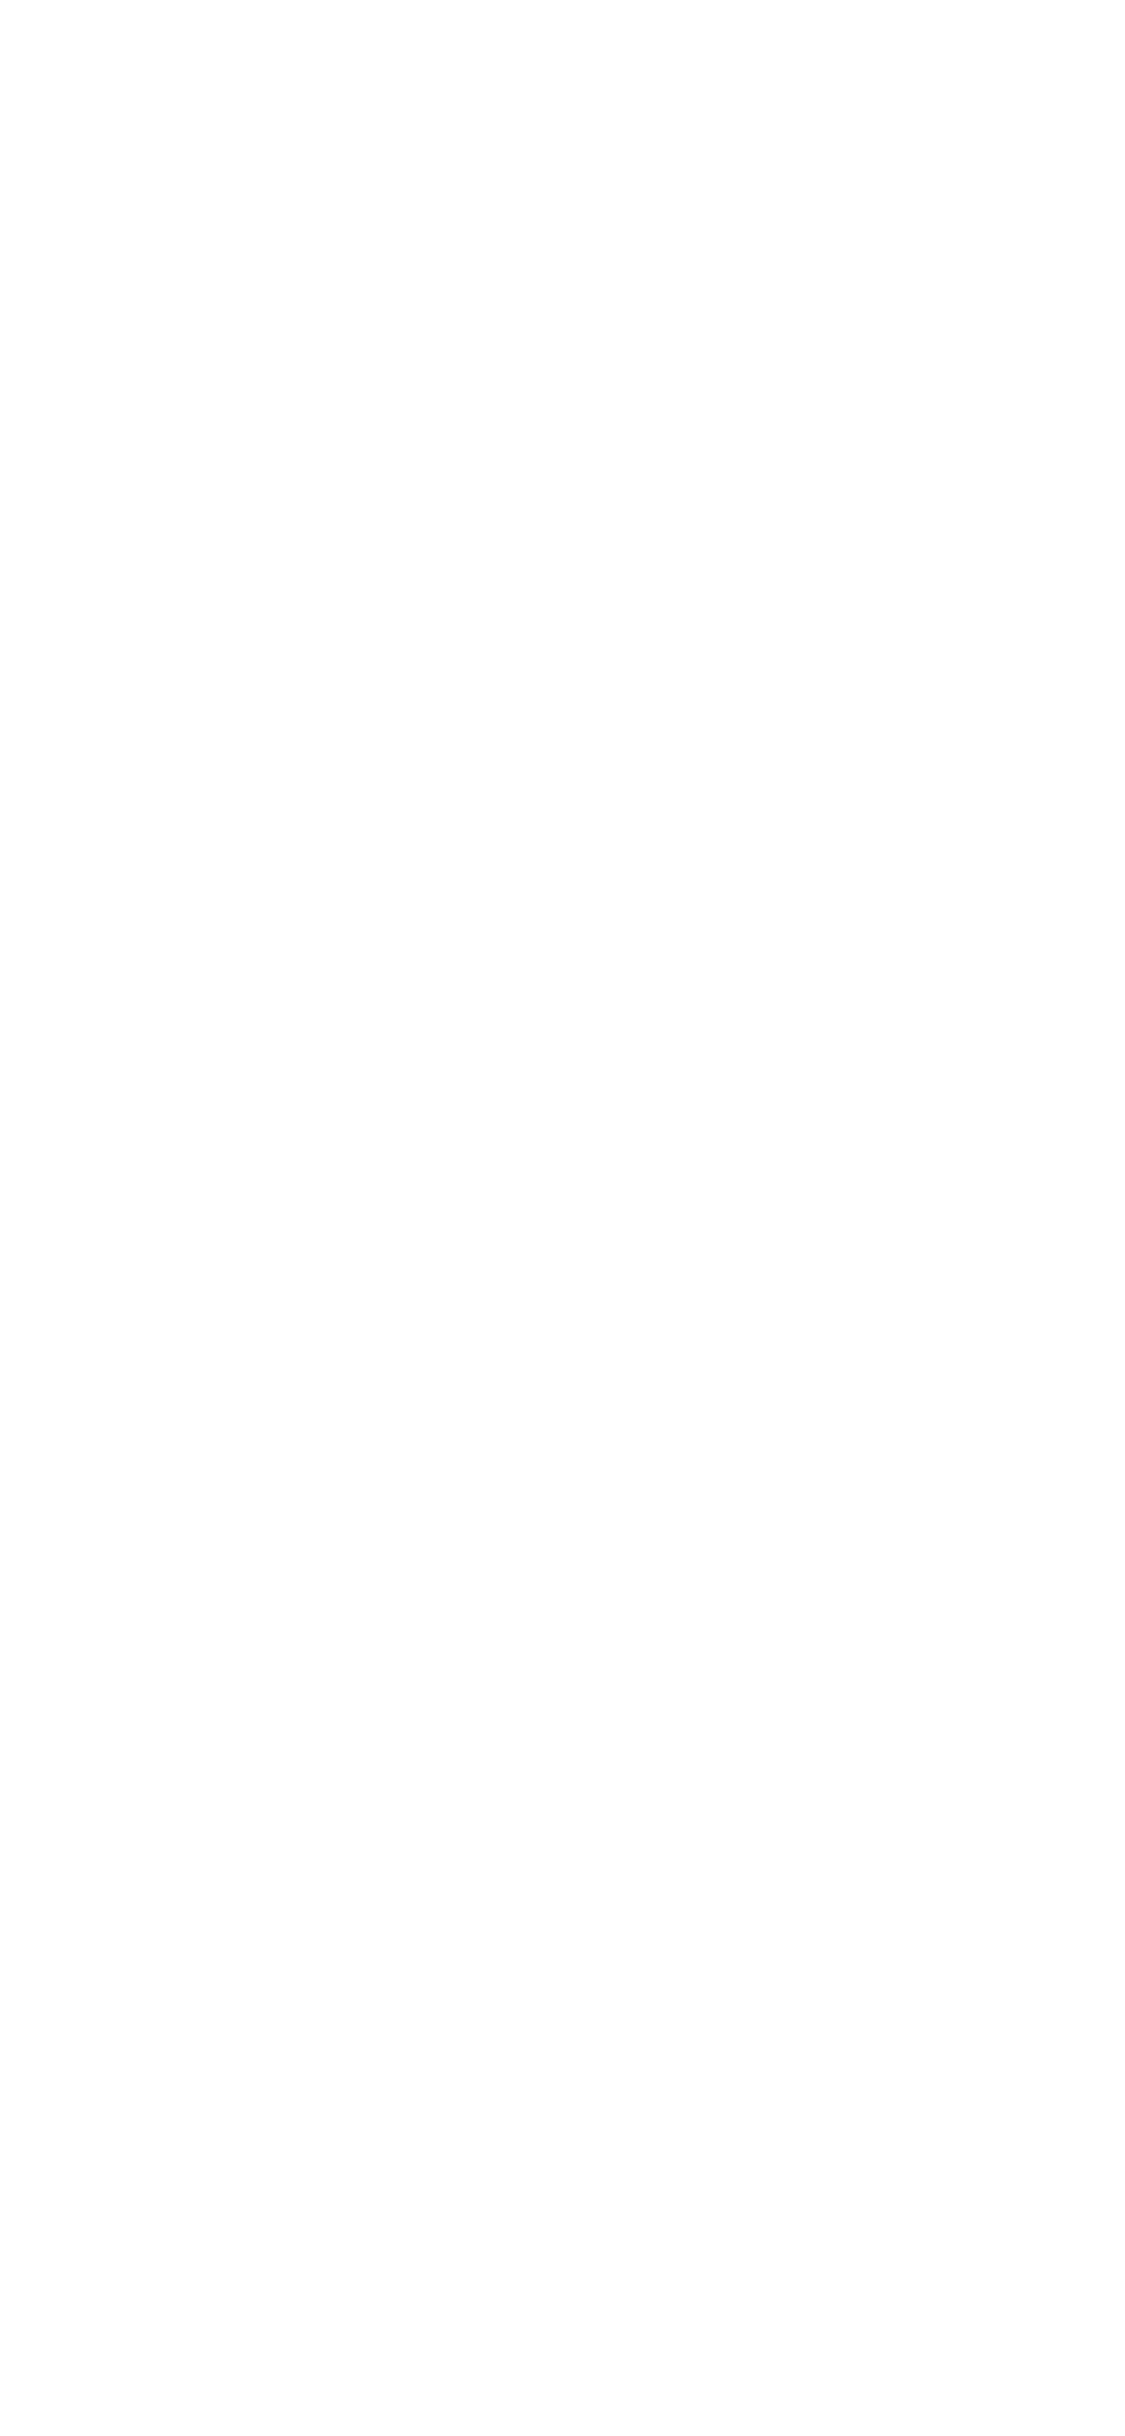 “Bonds” Be happy together みんなで幸せになる